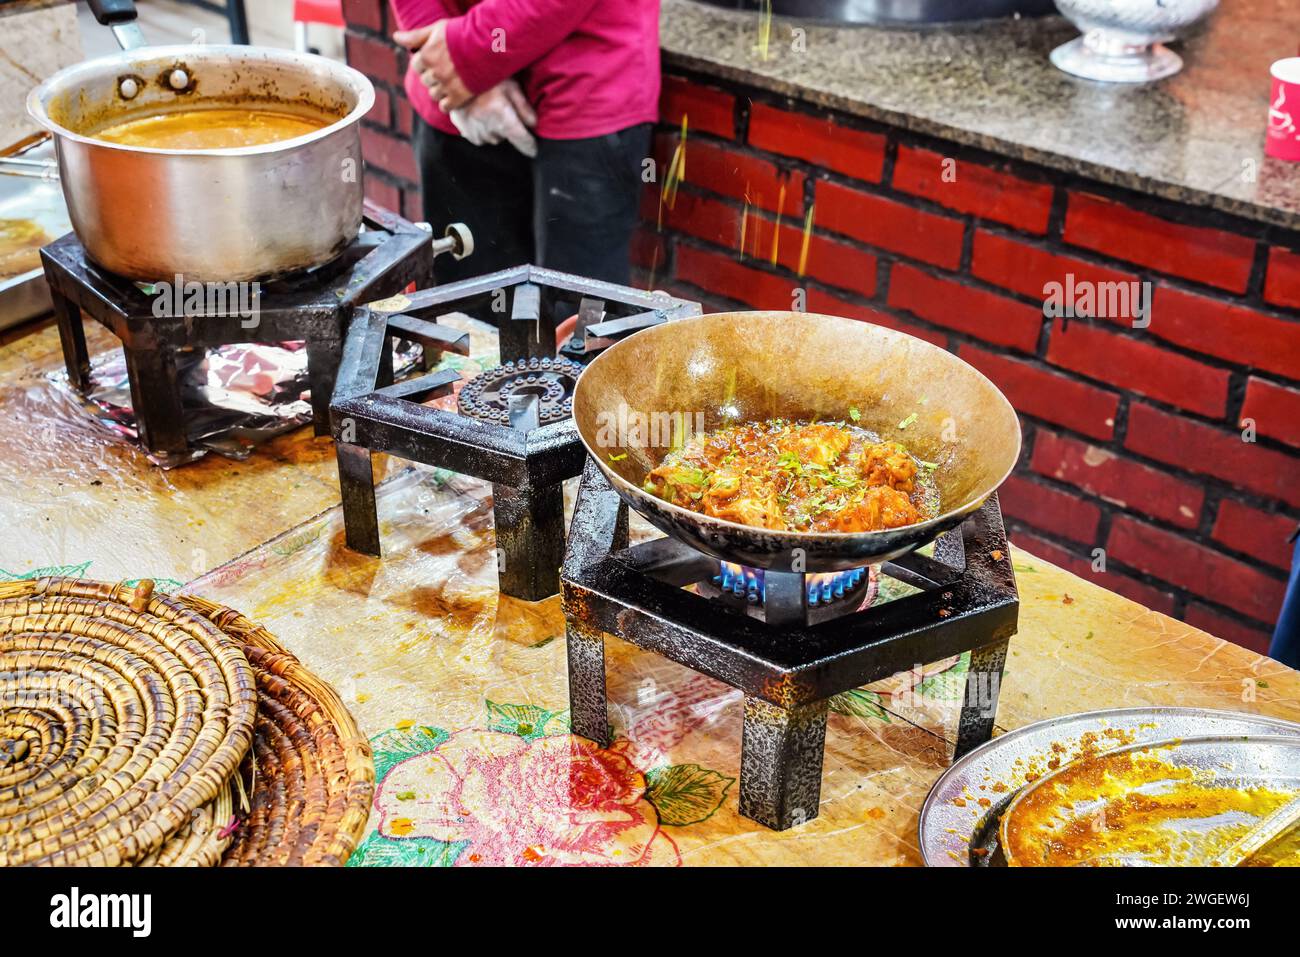 La nourriture étant préparée sur de simples cuisinières à gaz dans un restaurant typiquement pakistanais, herbes et épices déposées dans une casserole en acier avec un plat chaud, détail de gros plan Banque D'Images